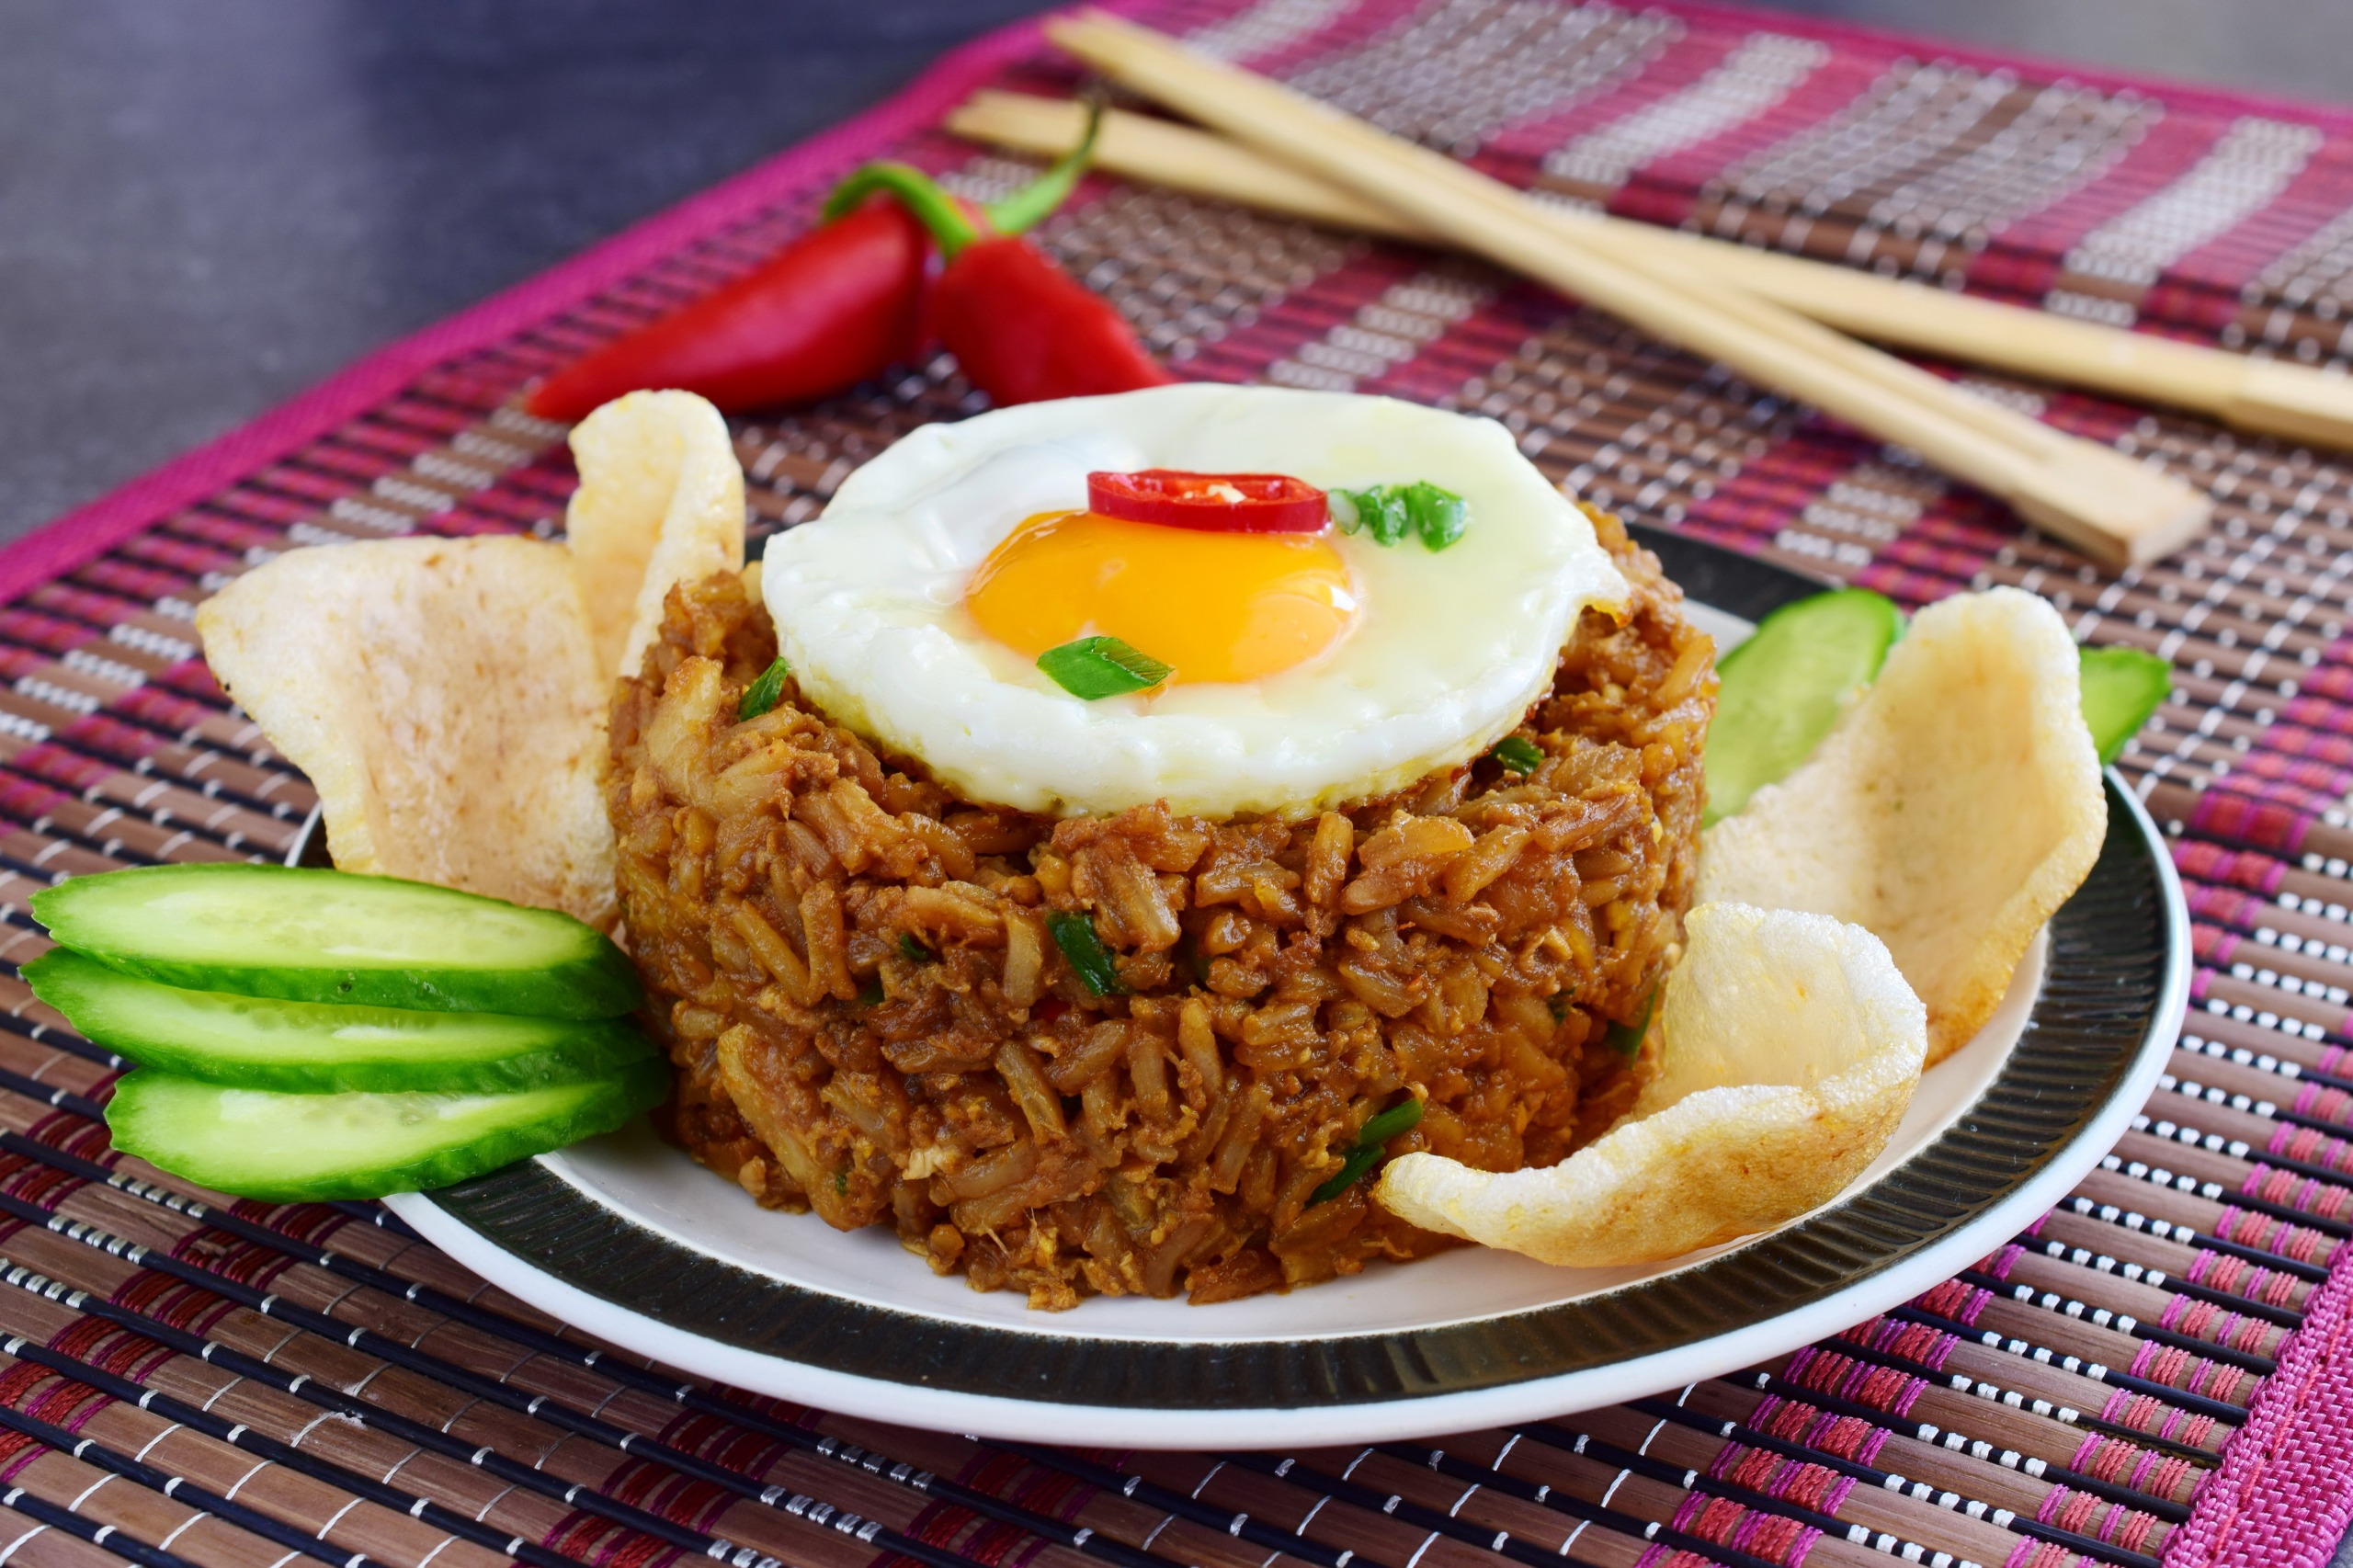 Recette du nasi goreng, le traditionnel riz frit indonésien - Azimuth